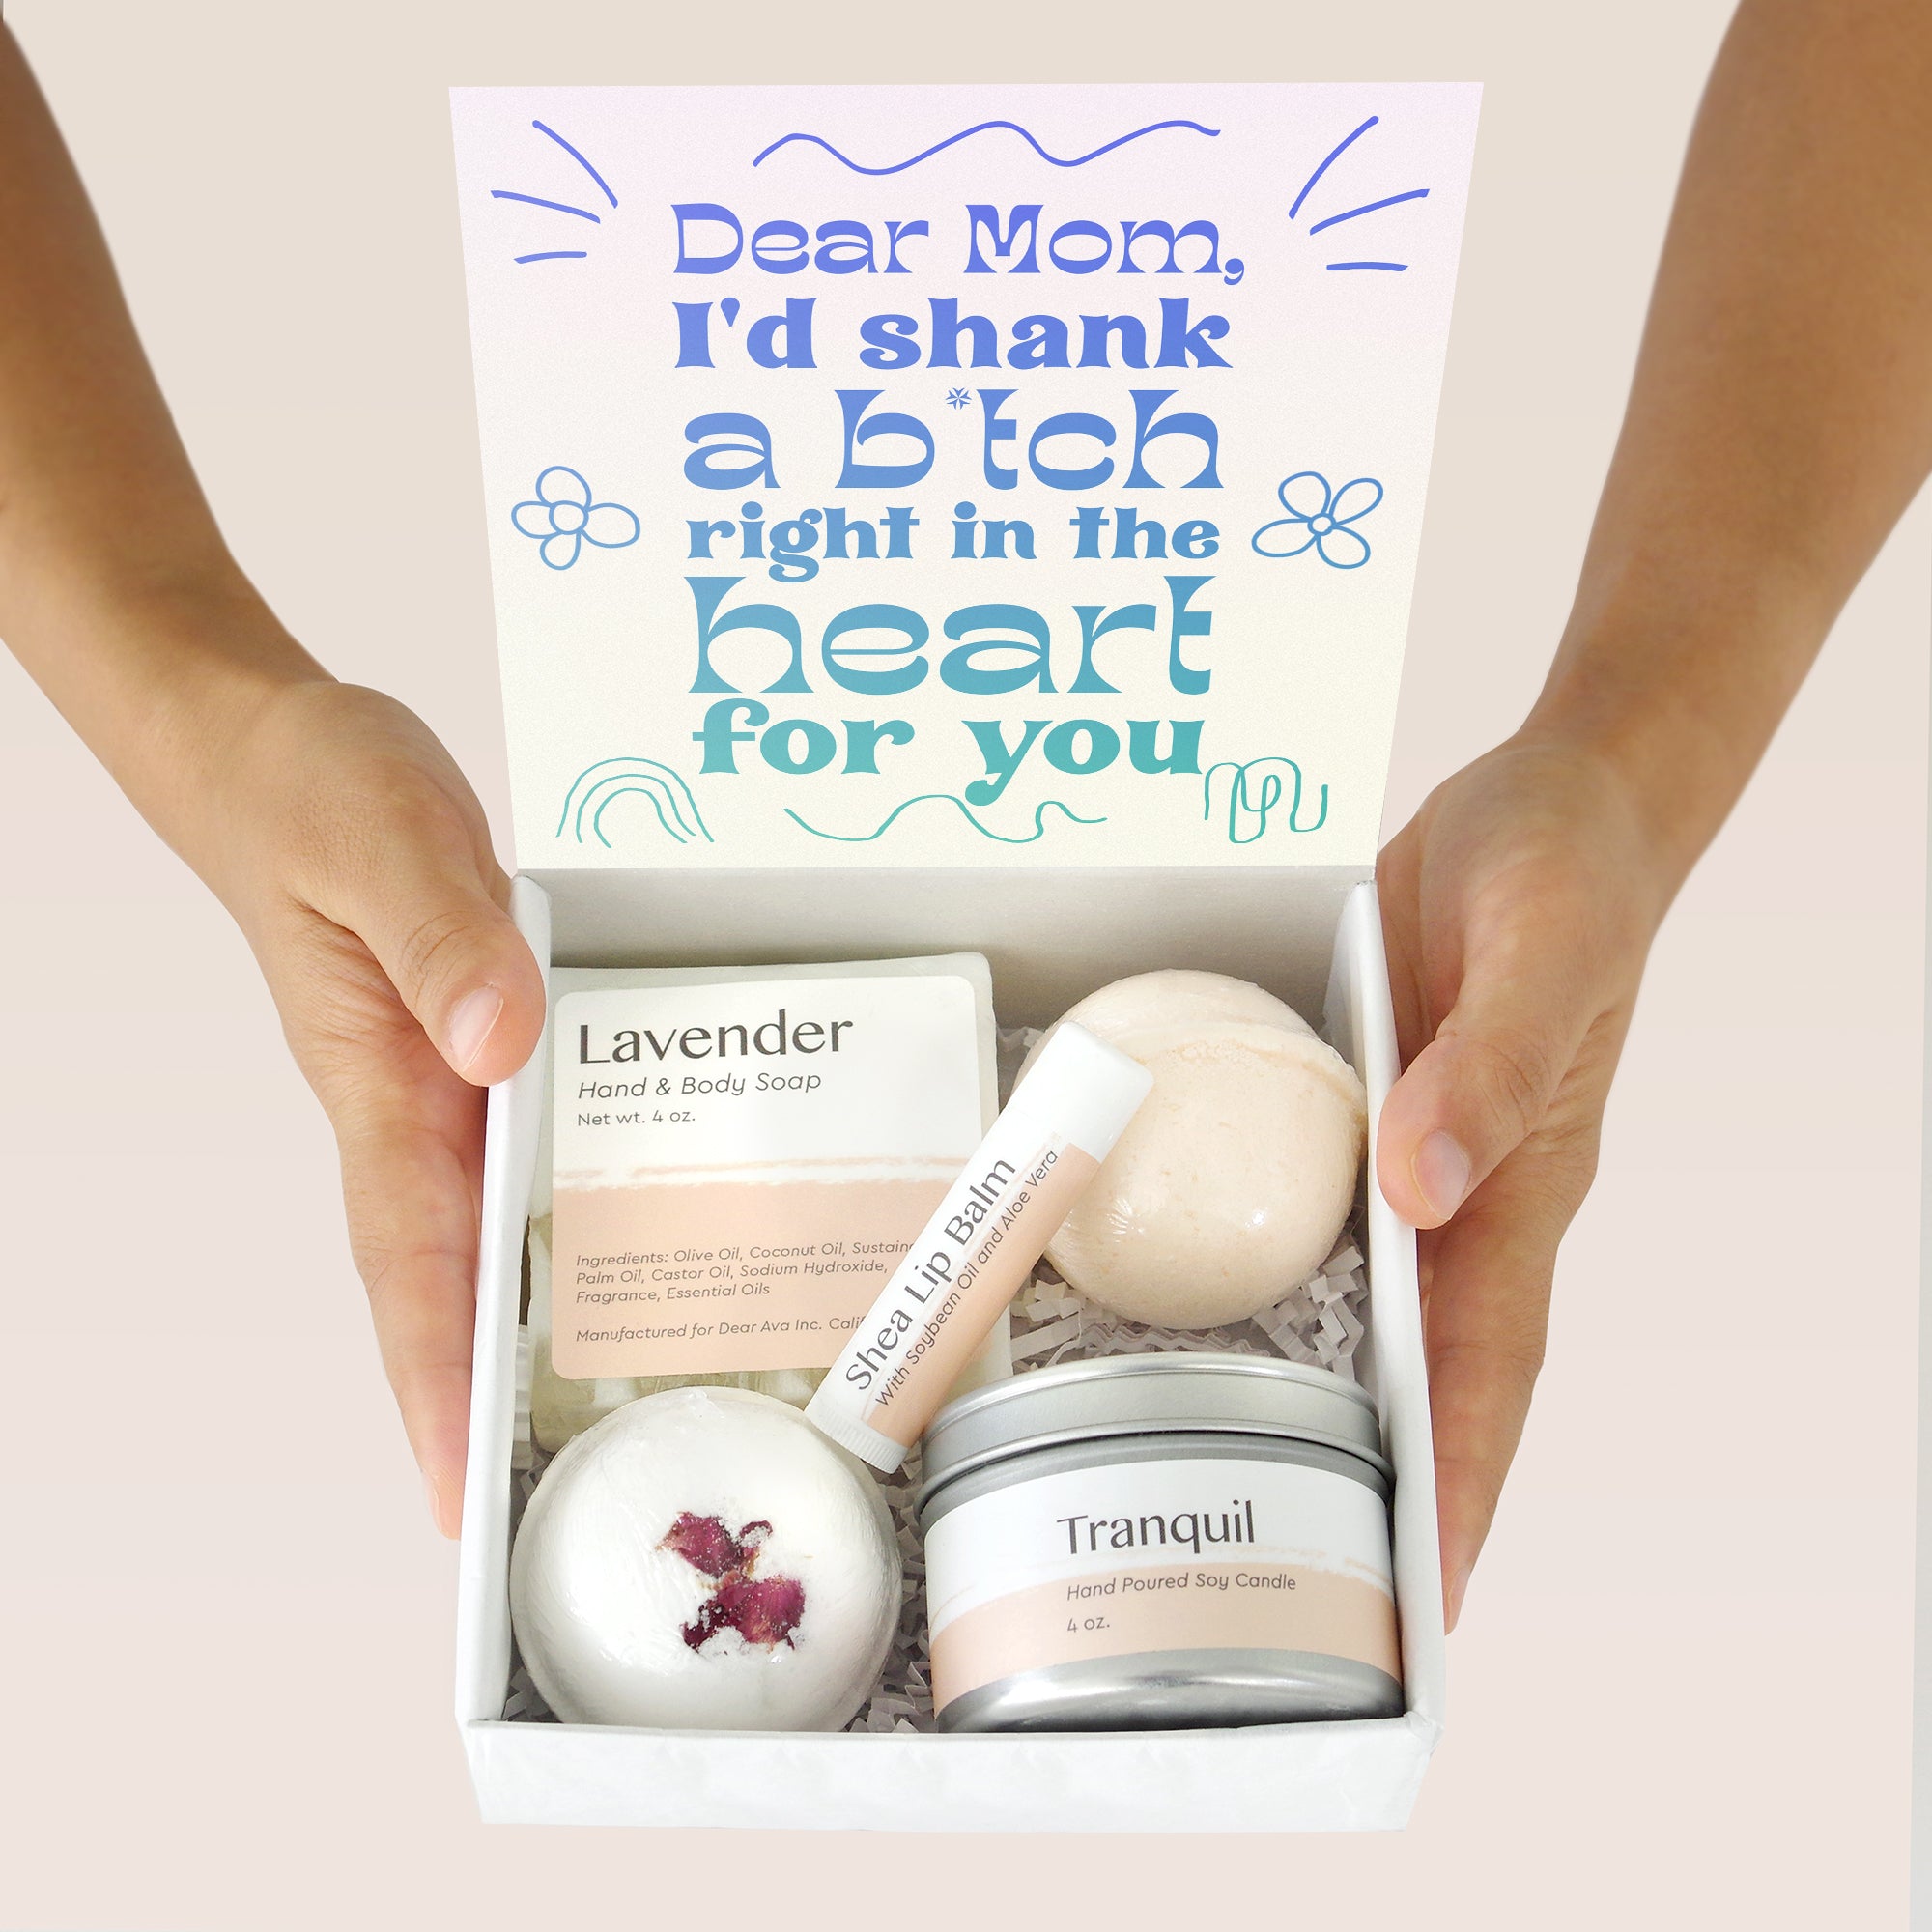 Funny Mom Gift Box Set - Shank a B - Dear Ava